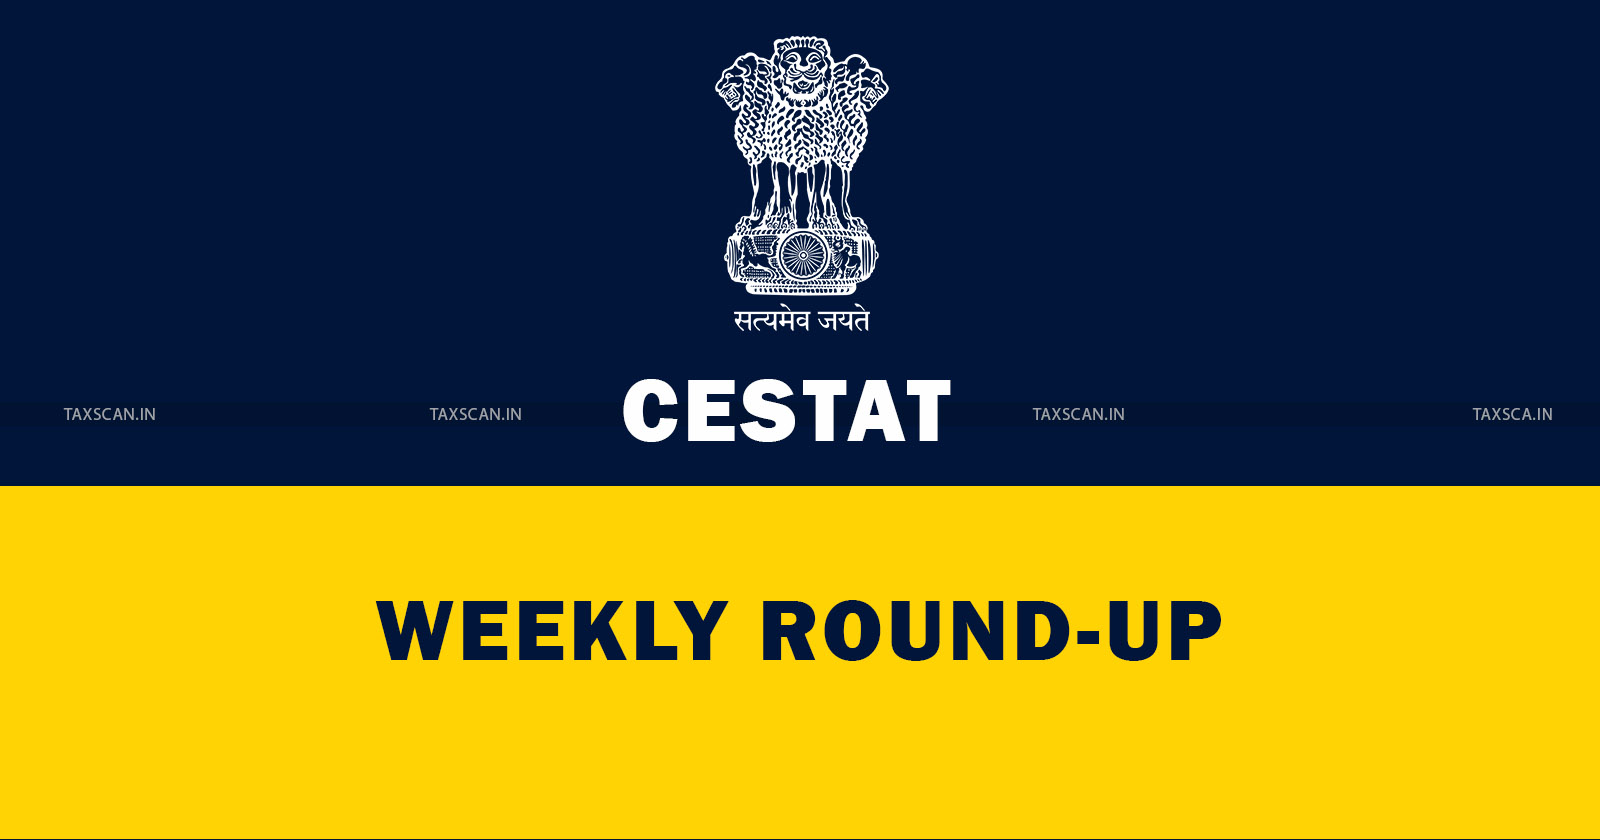 CESTAT Weekly Round Up - Weekly Round Up - cestat round up - cestat weekly - round up